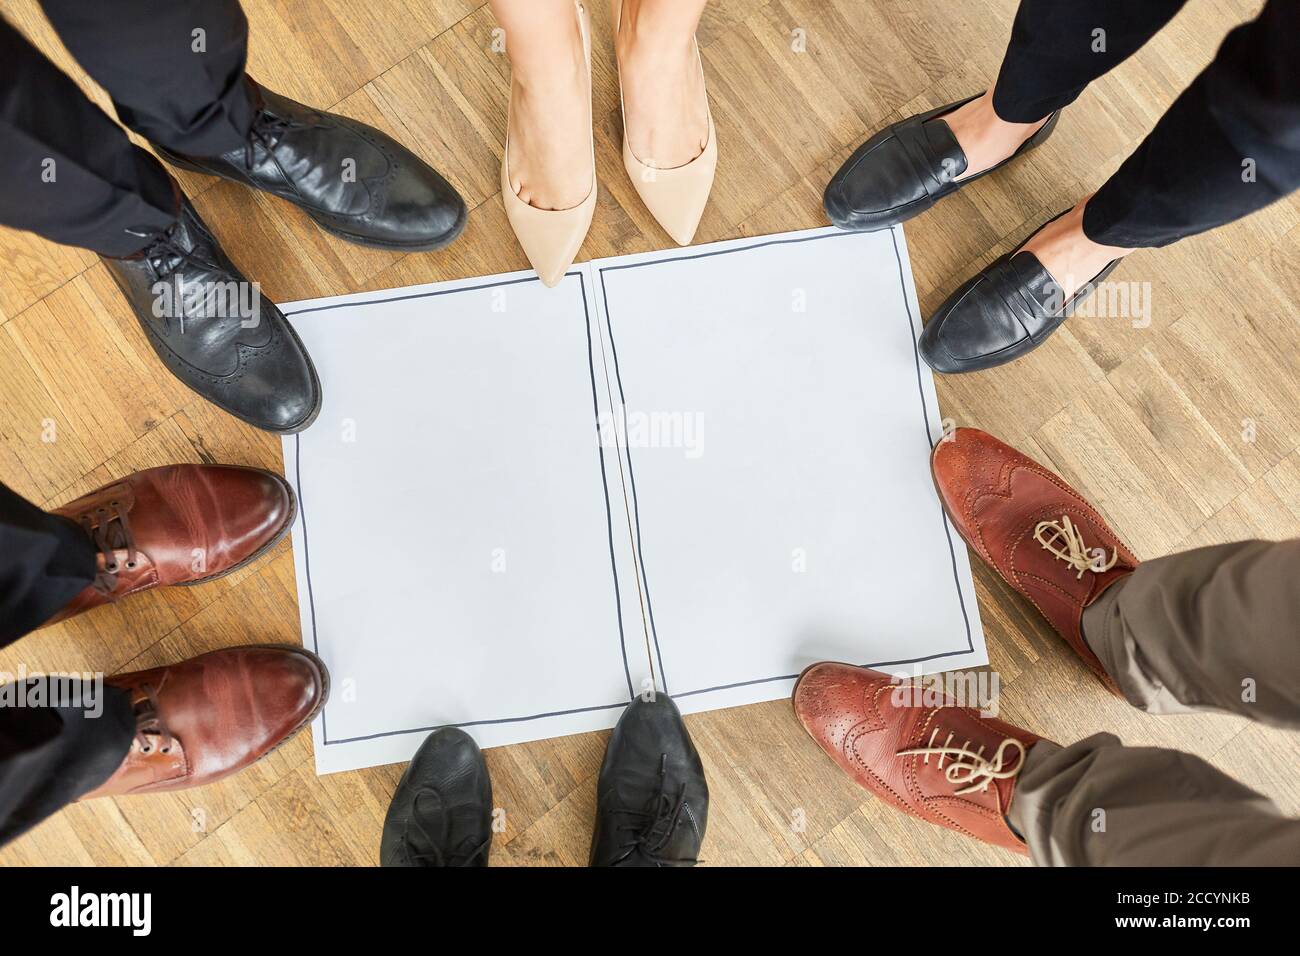 Pieds et chaussures d'un groupe de gens d'affaires à un réunion au bureau Banque D'Images